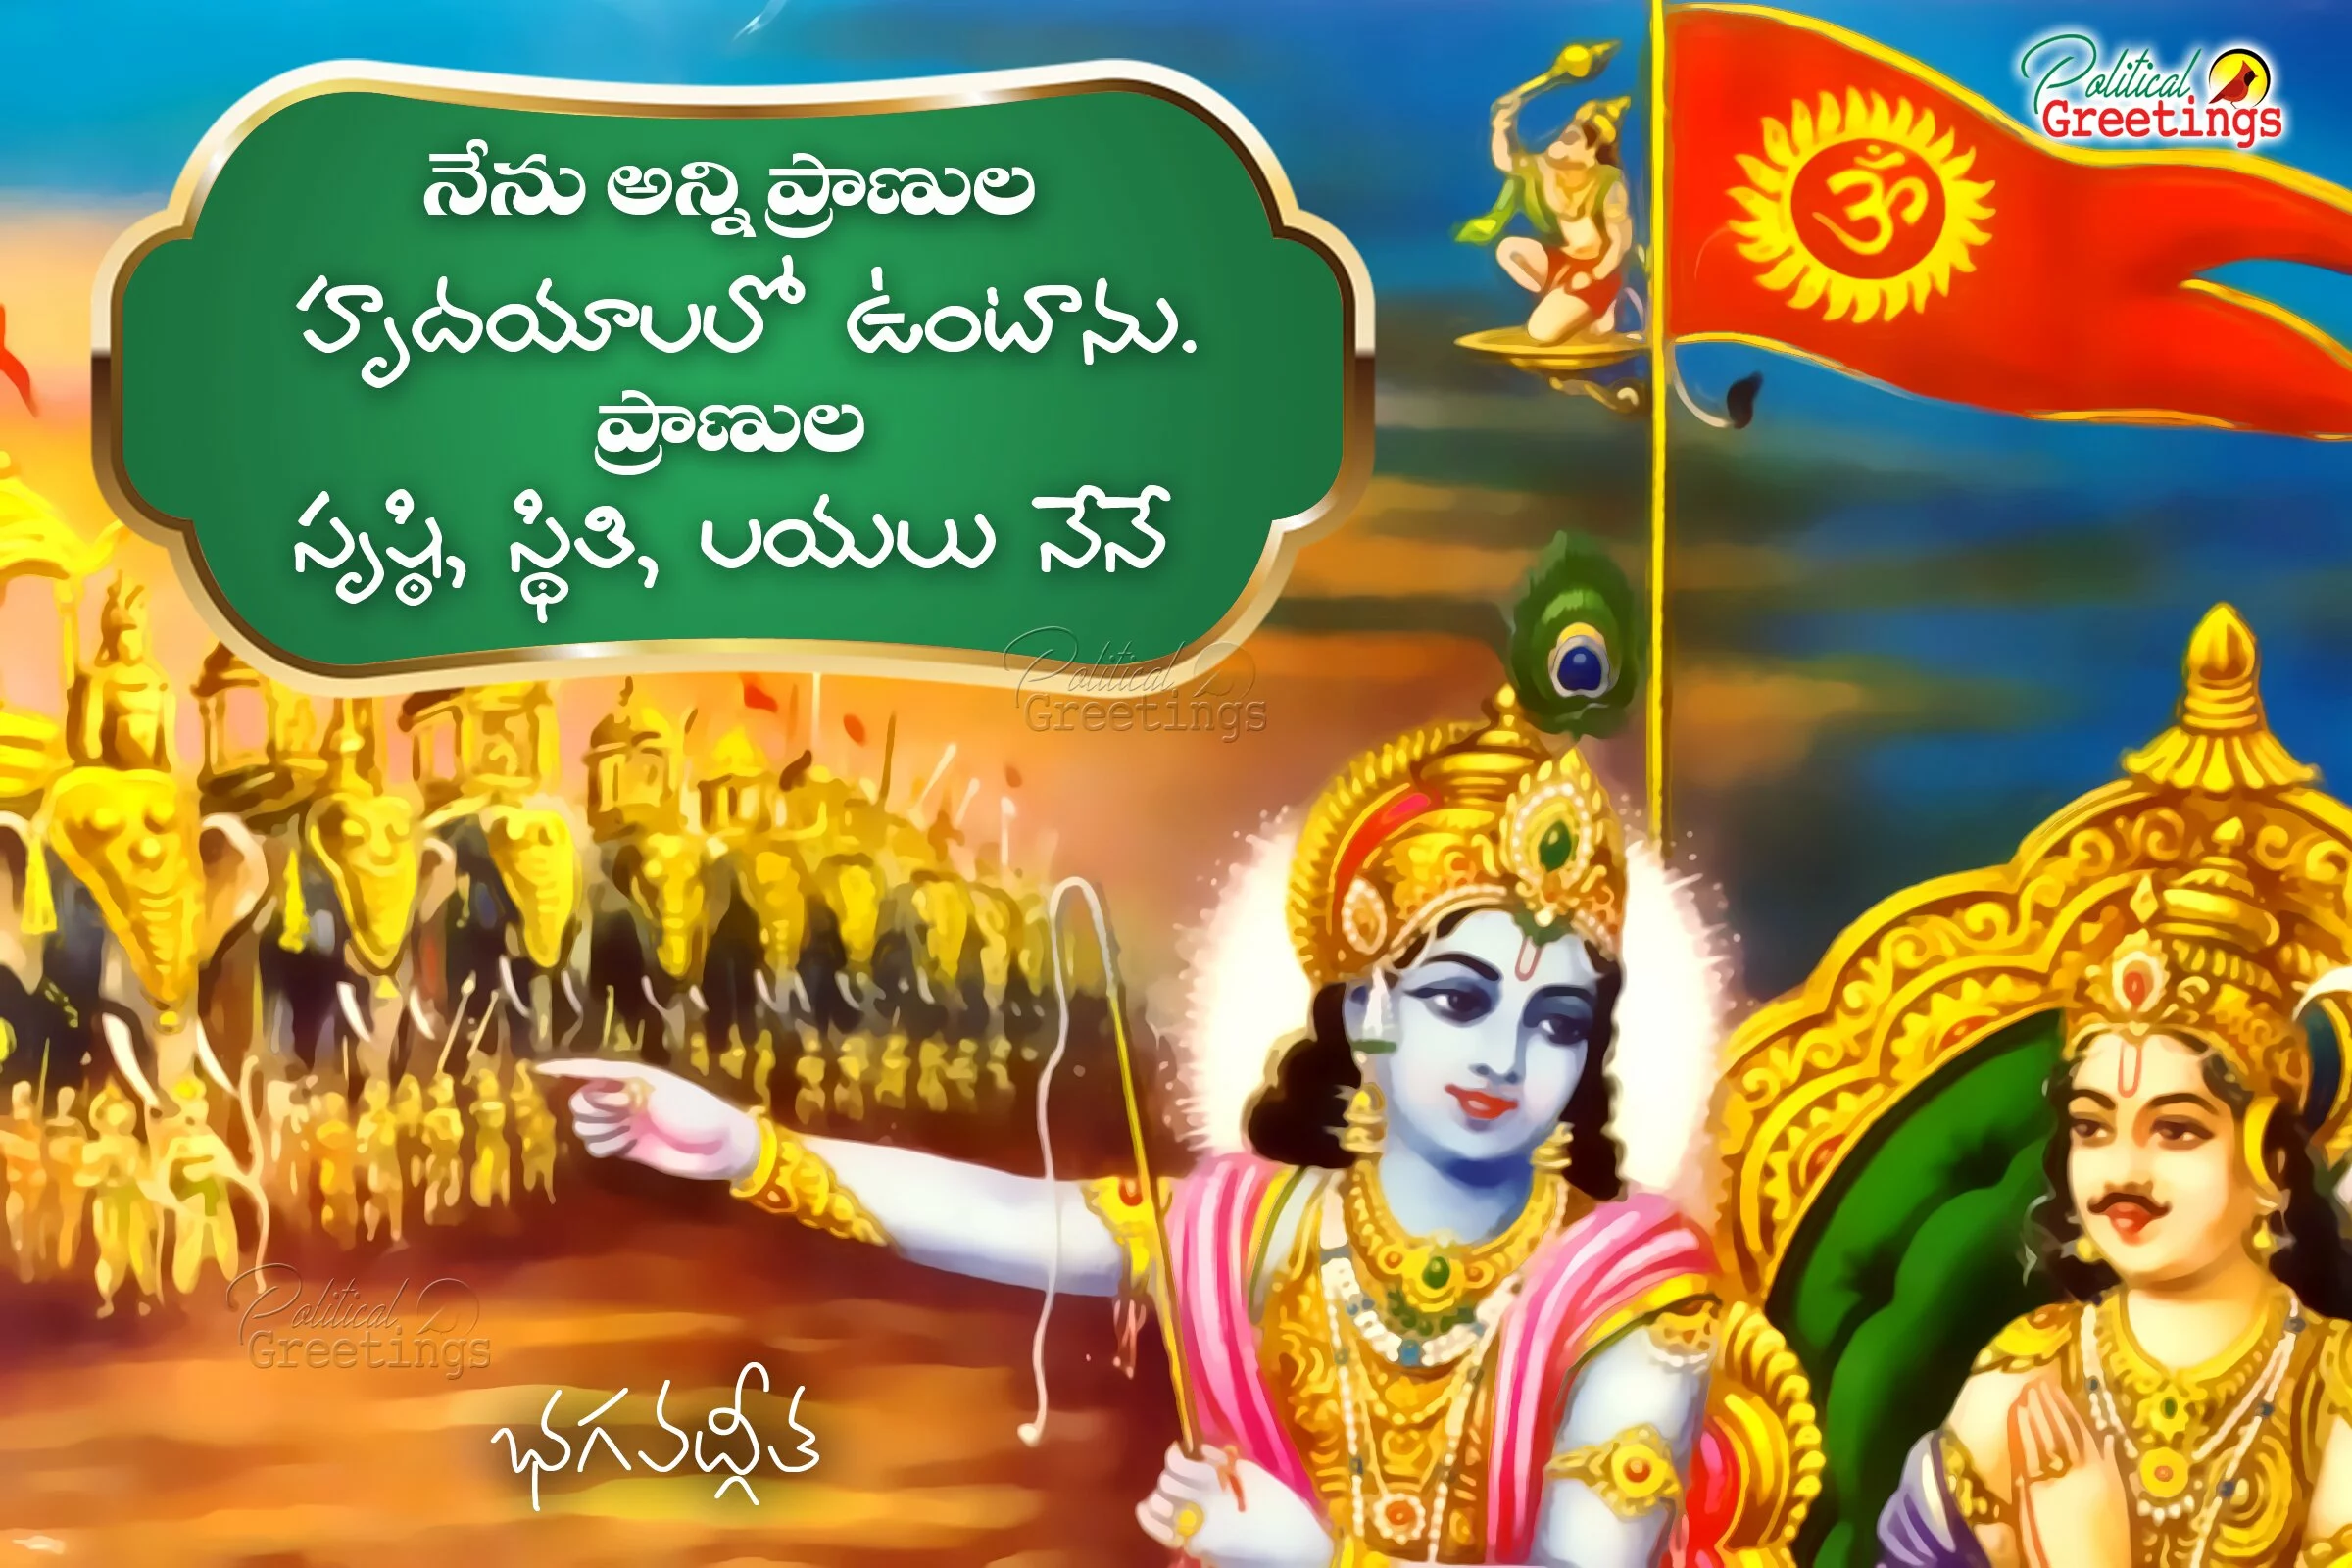 Famous Telugu Language Bhagavadgeetha Quotes and Great Sayings in Telugu Language